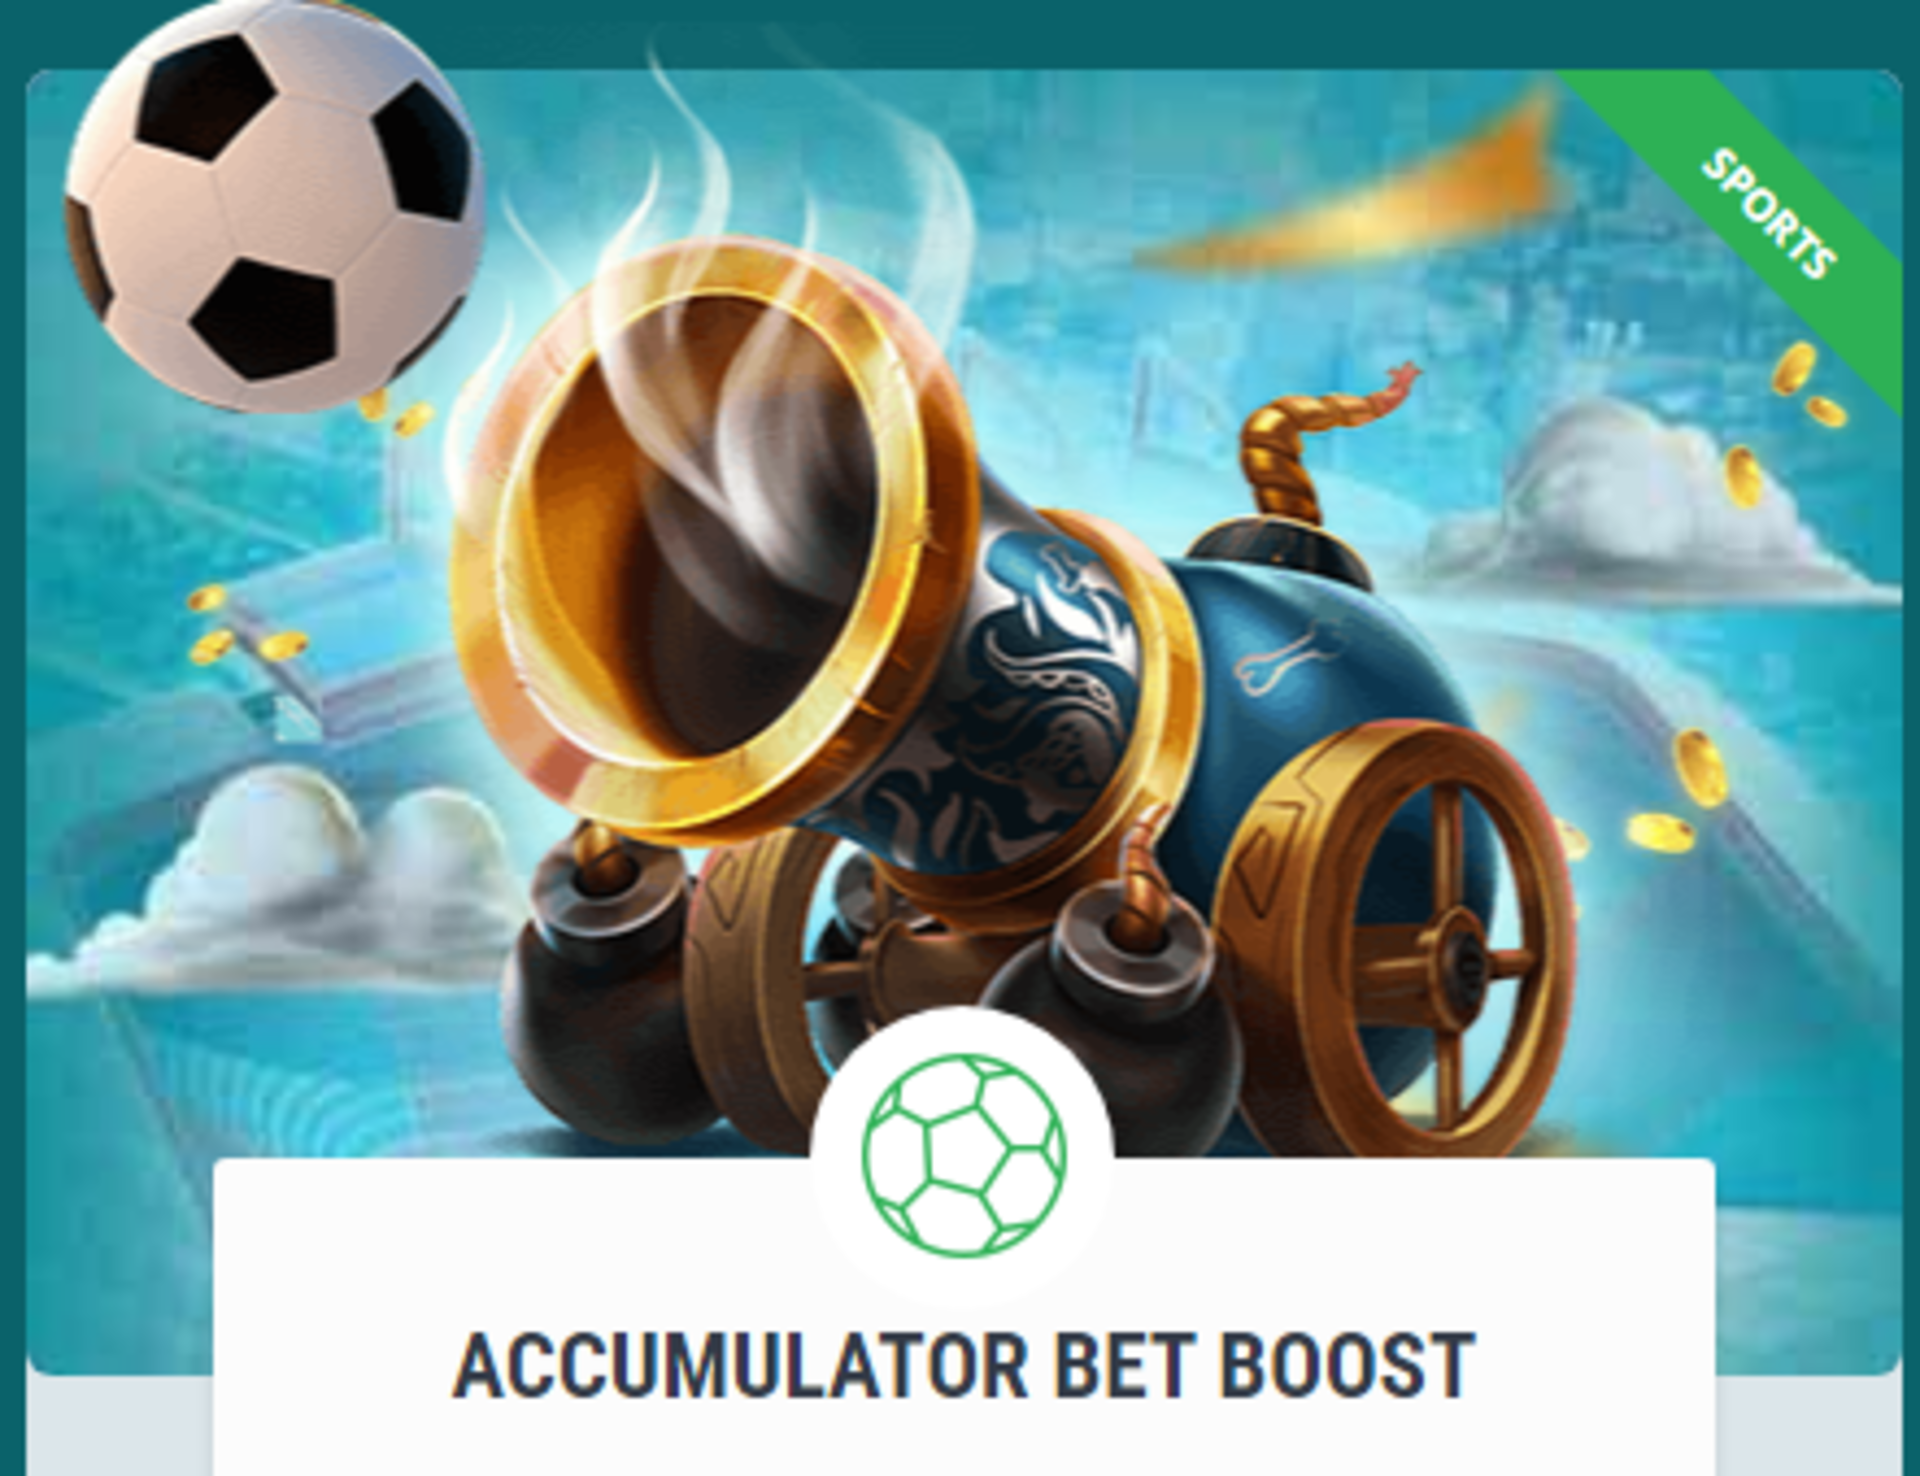 22Bet Accumulator Bet Boost Bonus up to 5000 Bonus Points